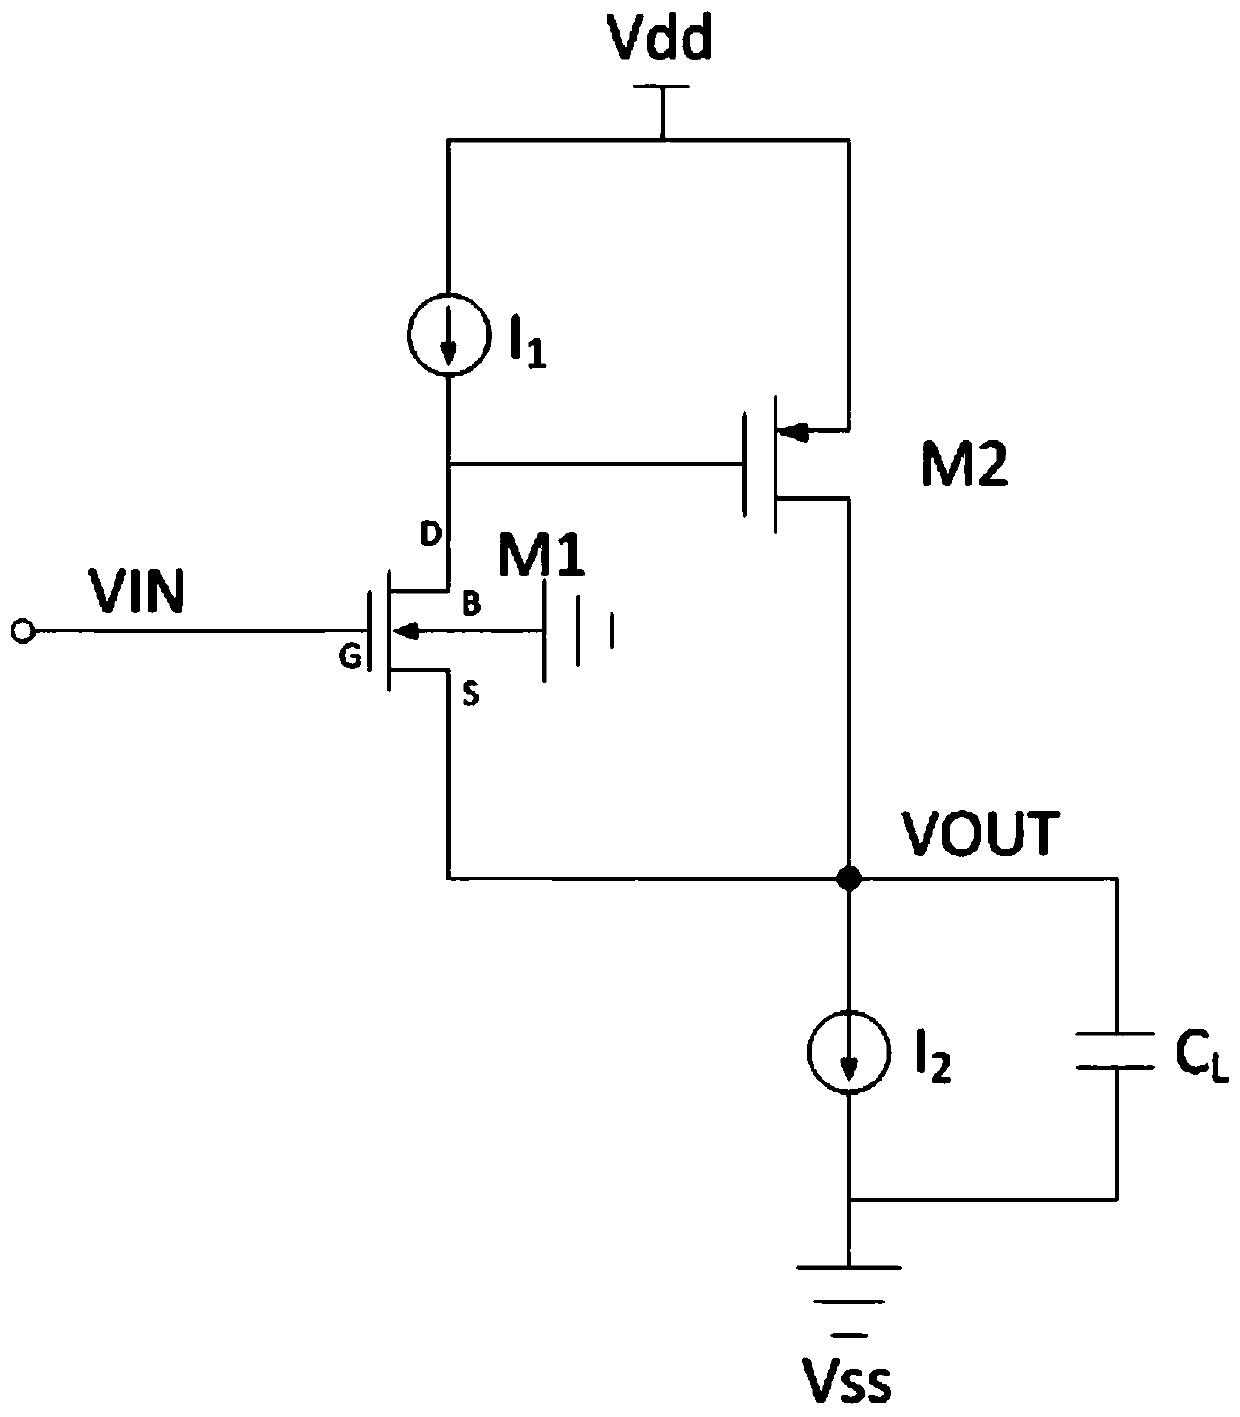 A source follower buffer circuit